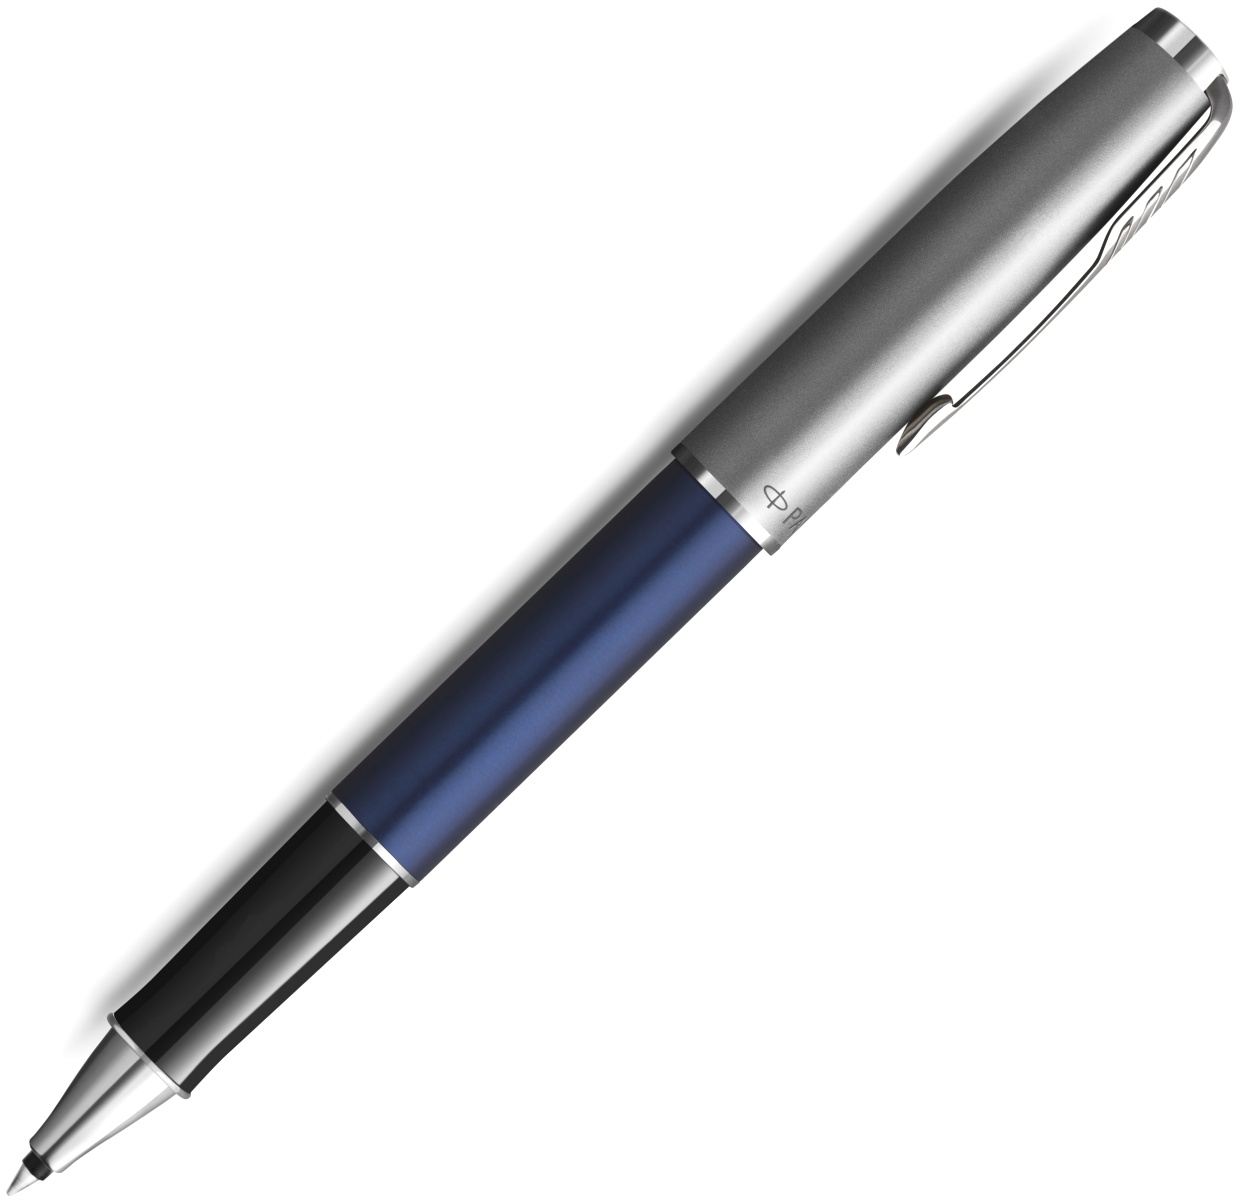  Ручка-роллер Parker Sonnet T546, Blue CT, фото 2